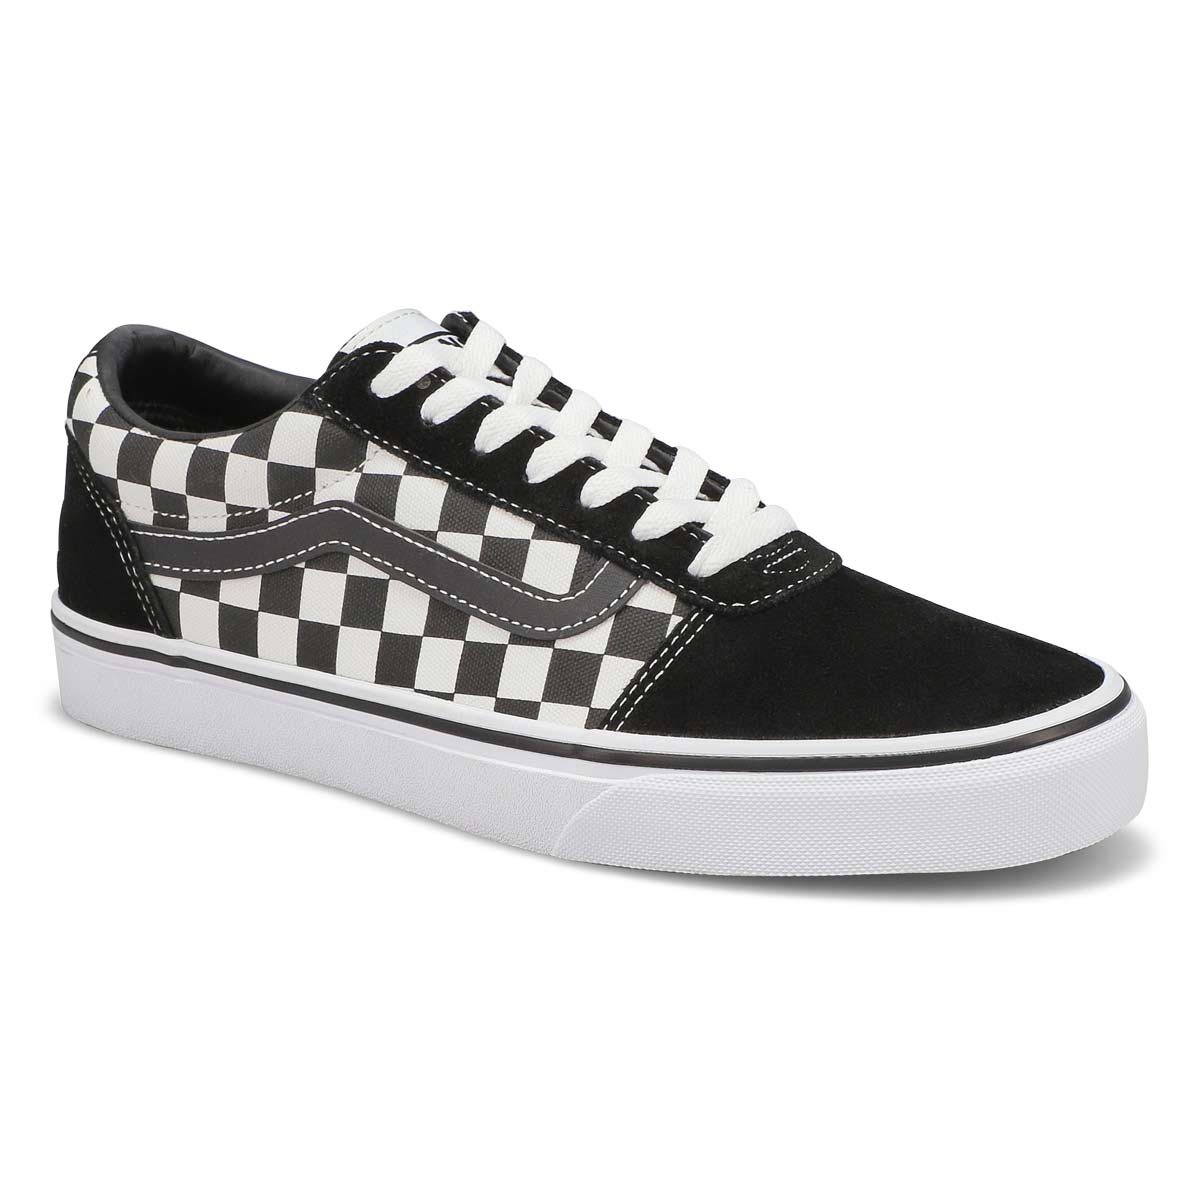 Vans Men's Ward Sneaker - Checkered Black/Whi 